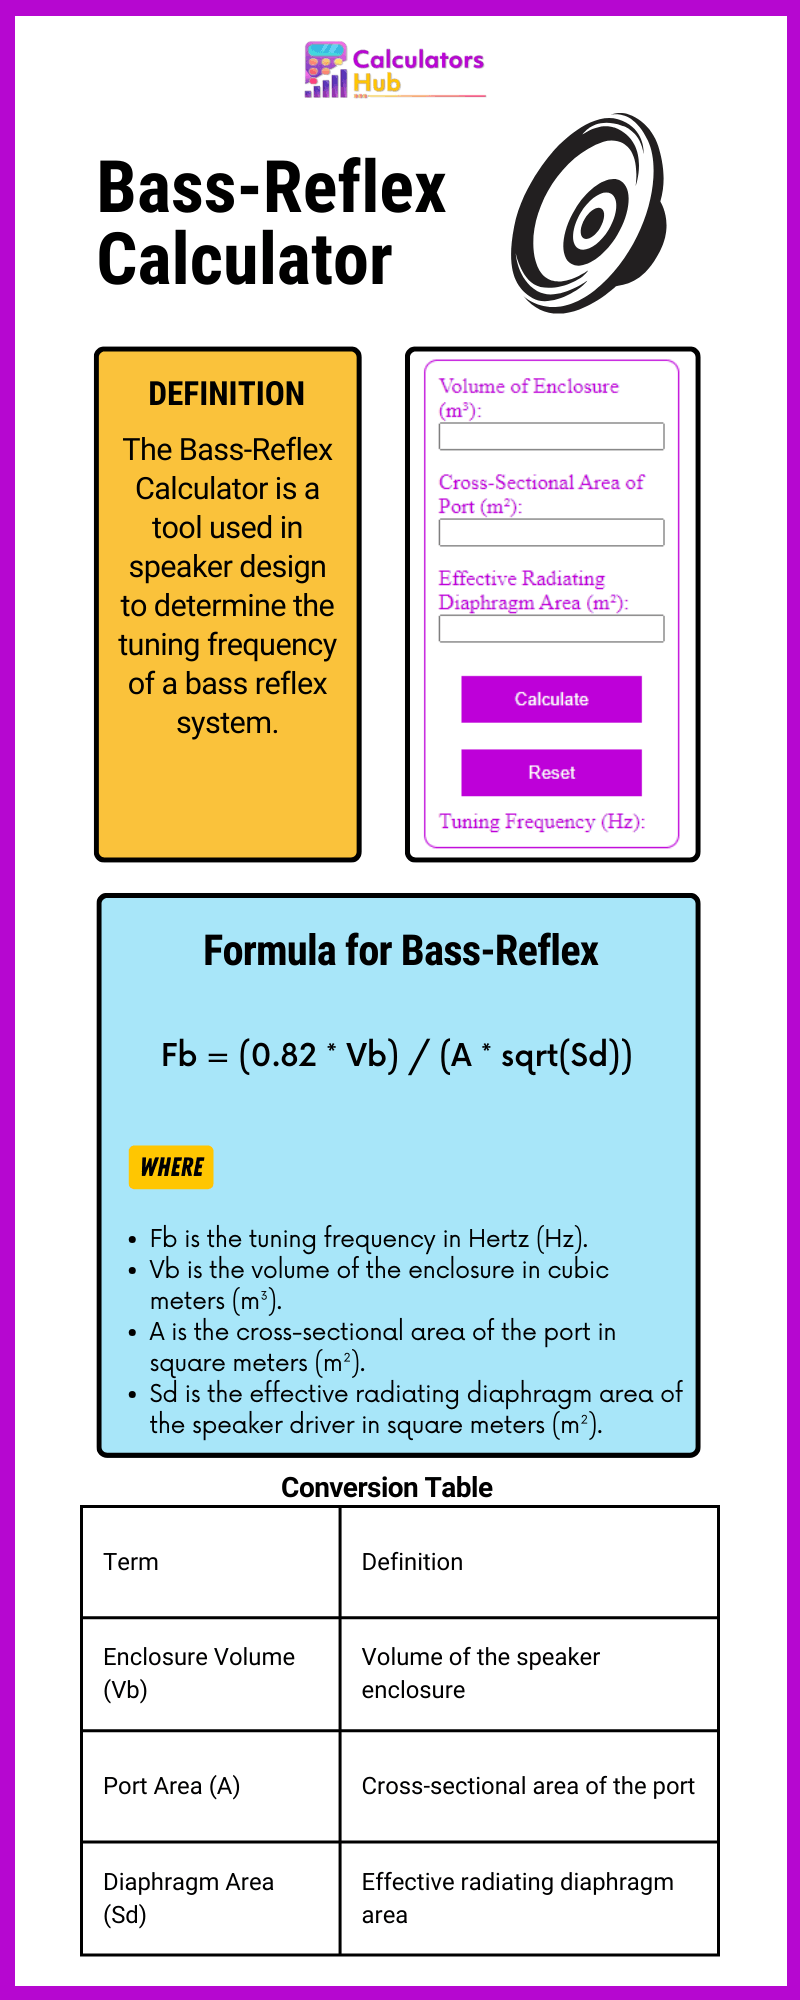 Bass-Reflex Calculator